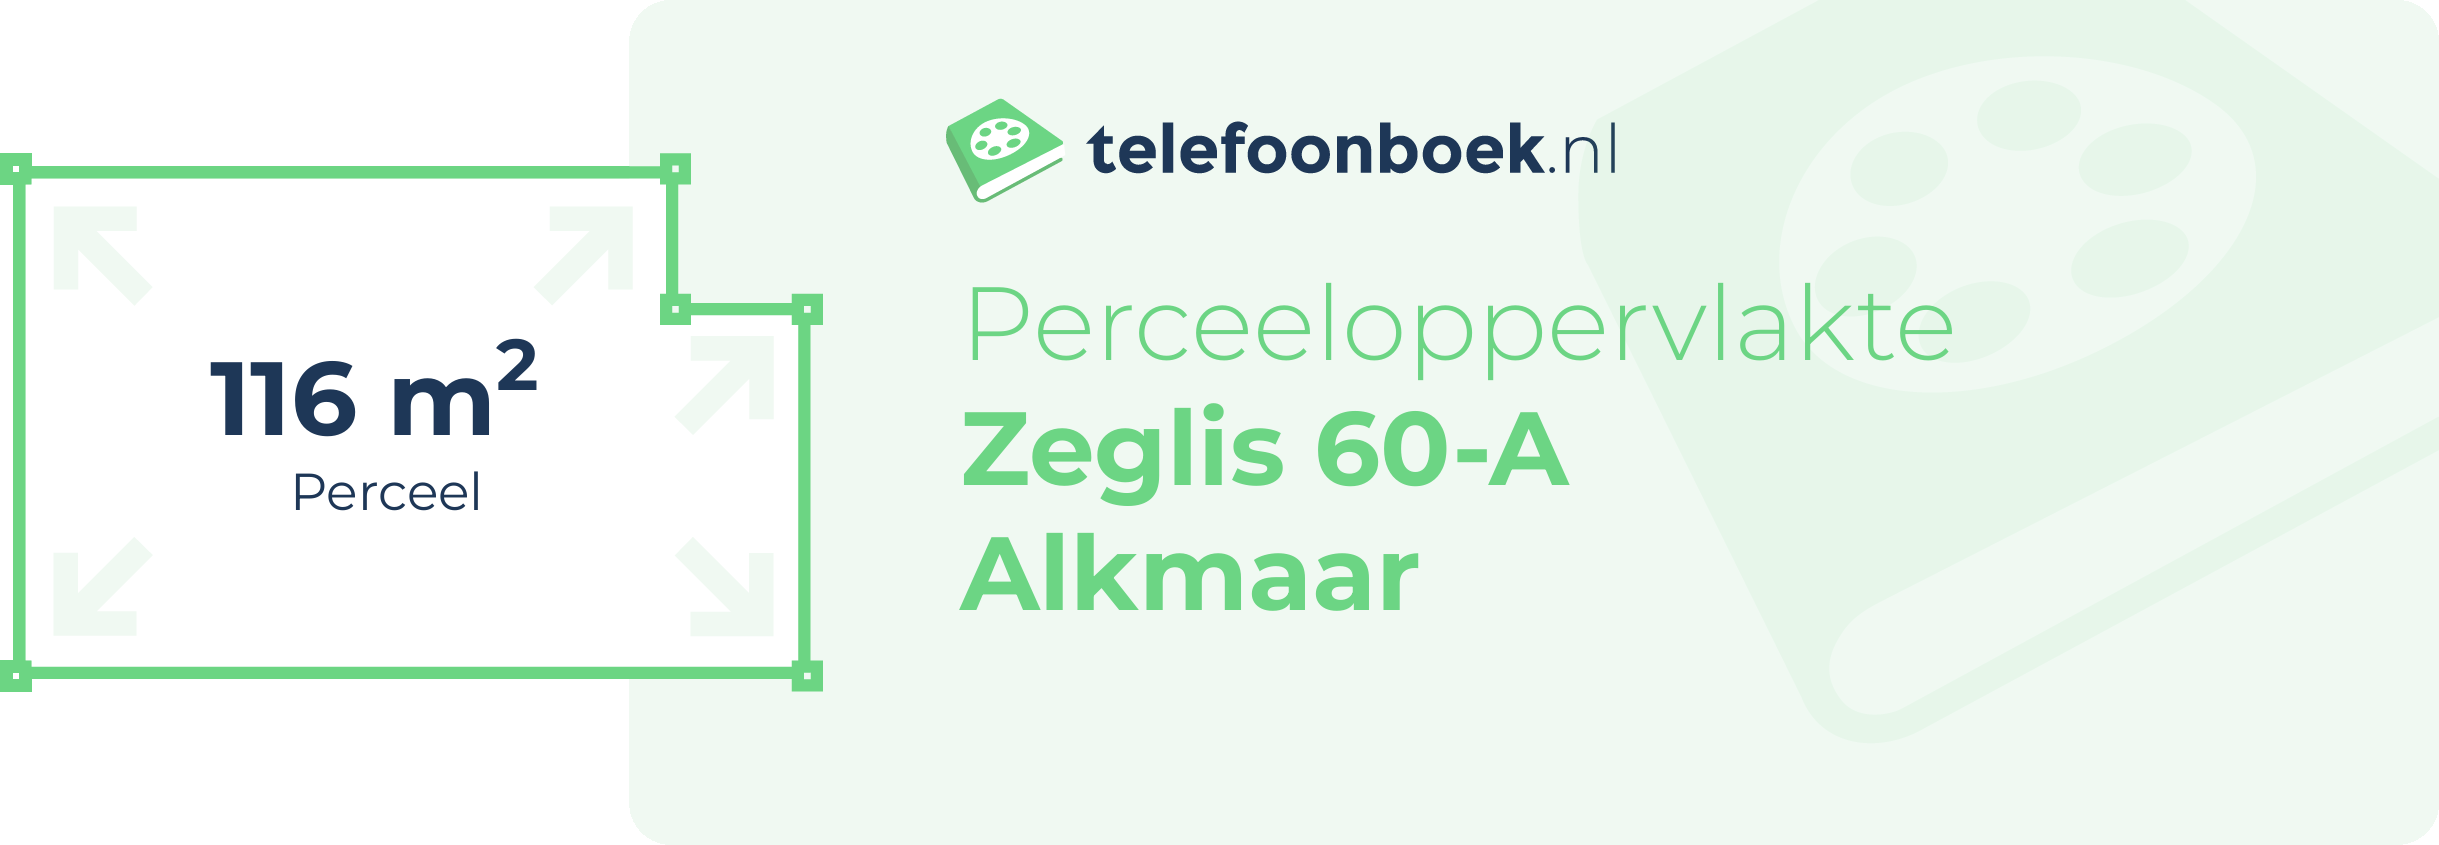 Perceeloppervlakte Zeglis 60-A Alkmaar